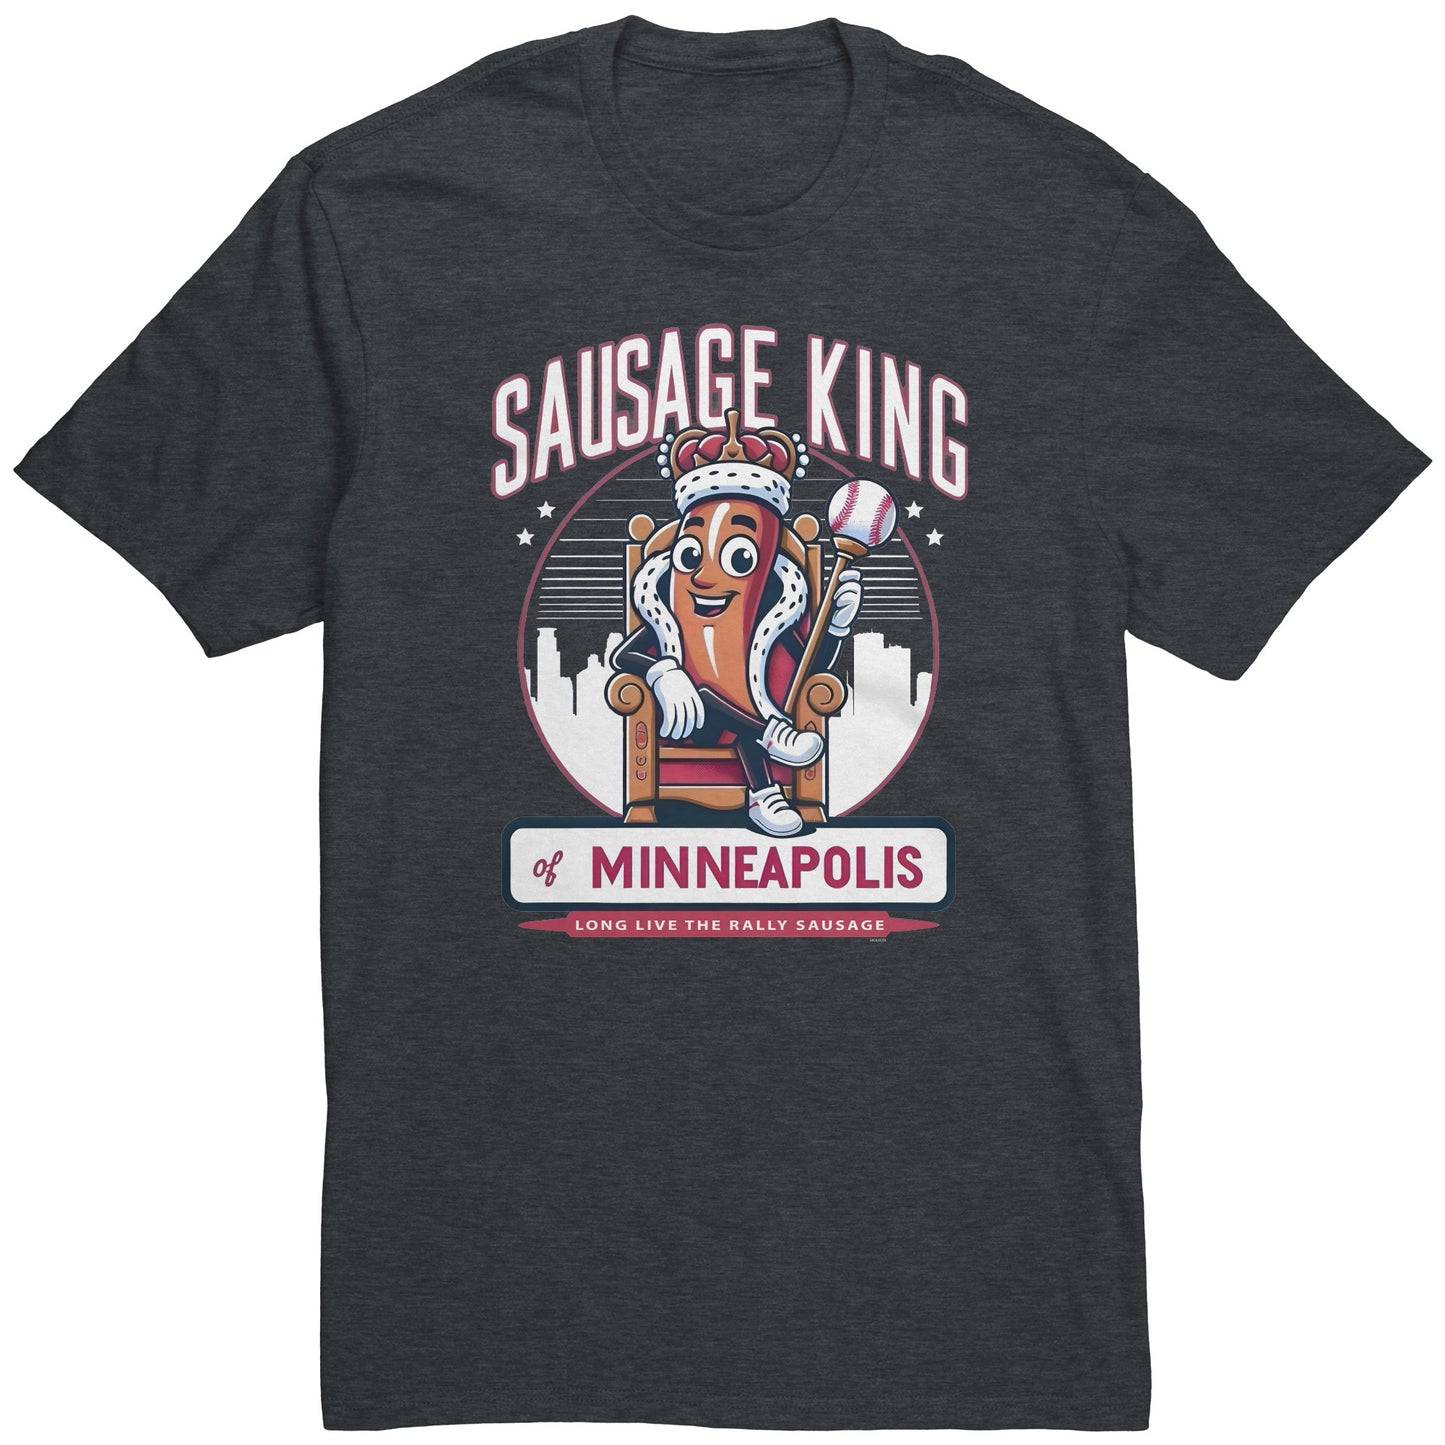 Sausage King of Minneapolis - Rally Sausage T-Shirt